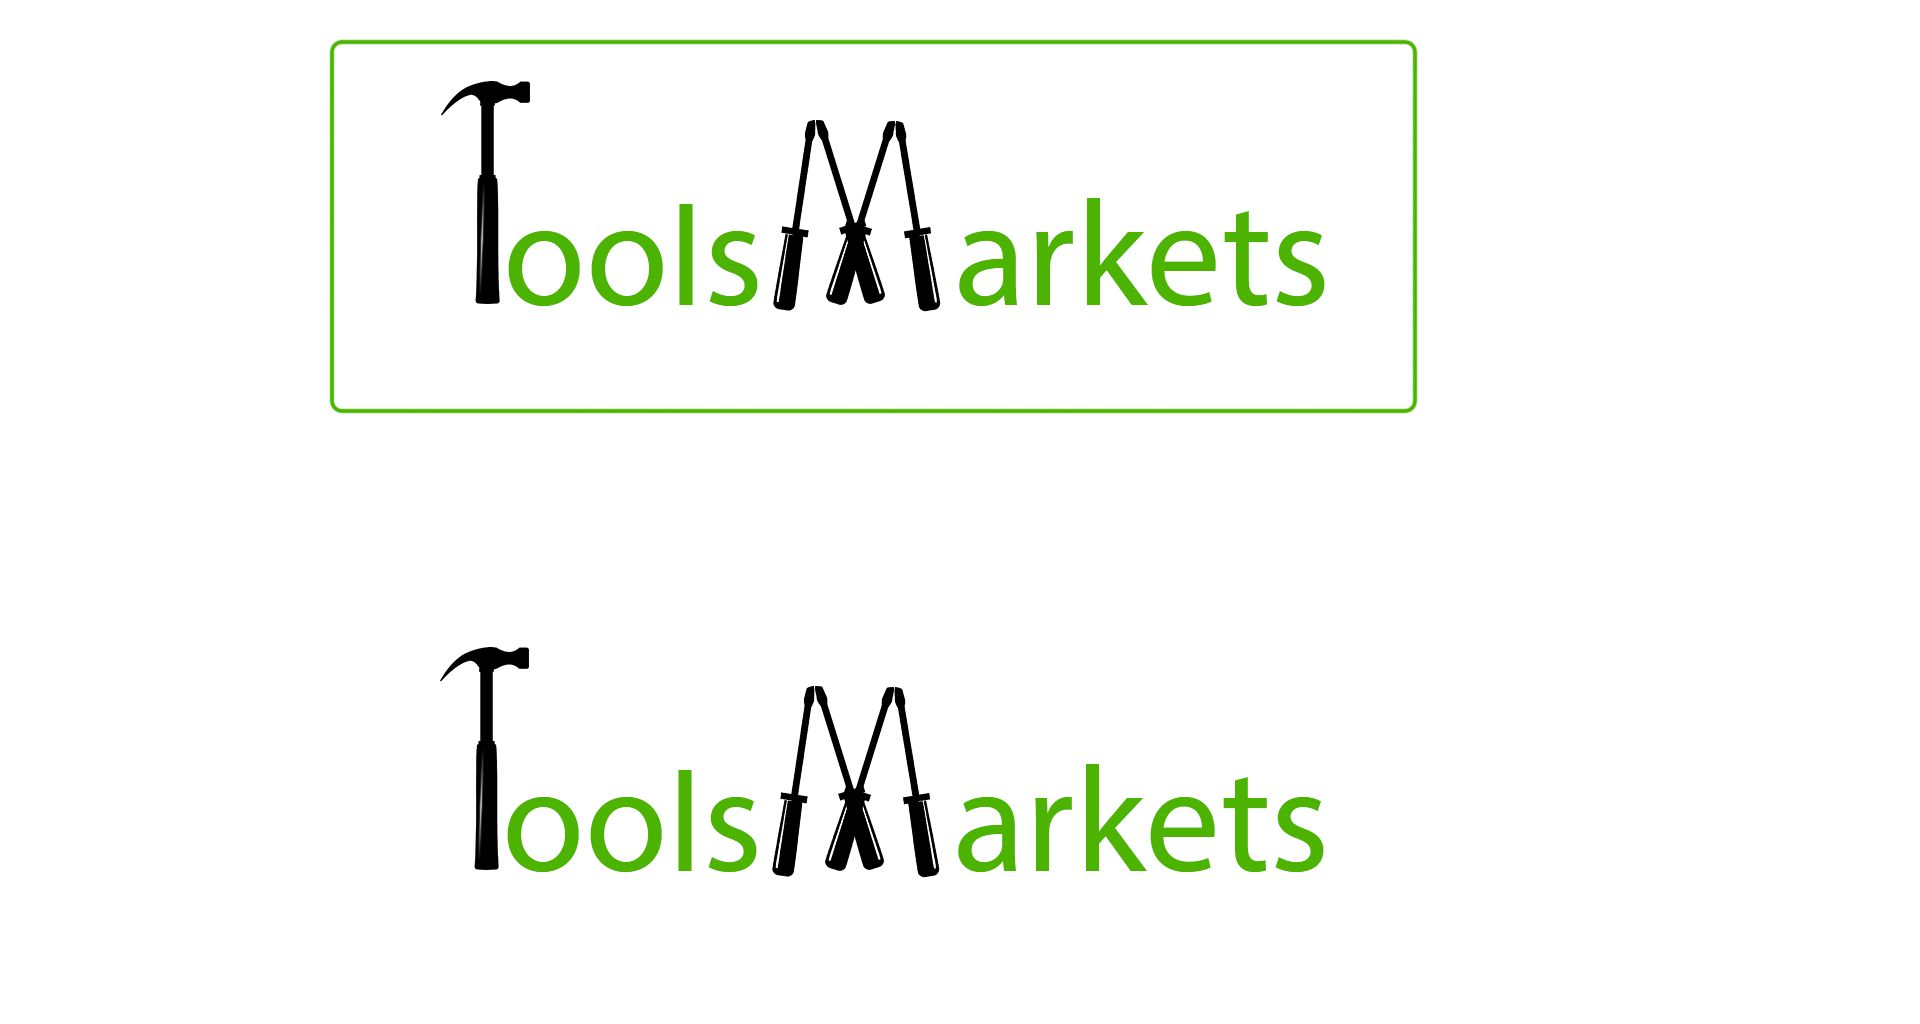 Логотип для ИМ TooIsMarkets - дизайнер iamvalentinee